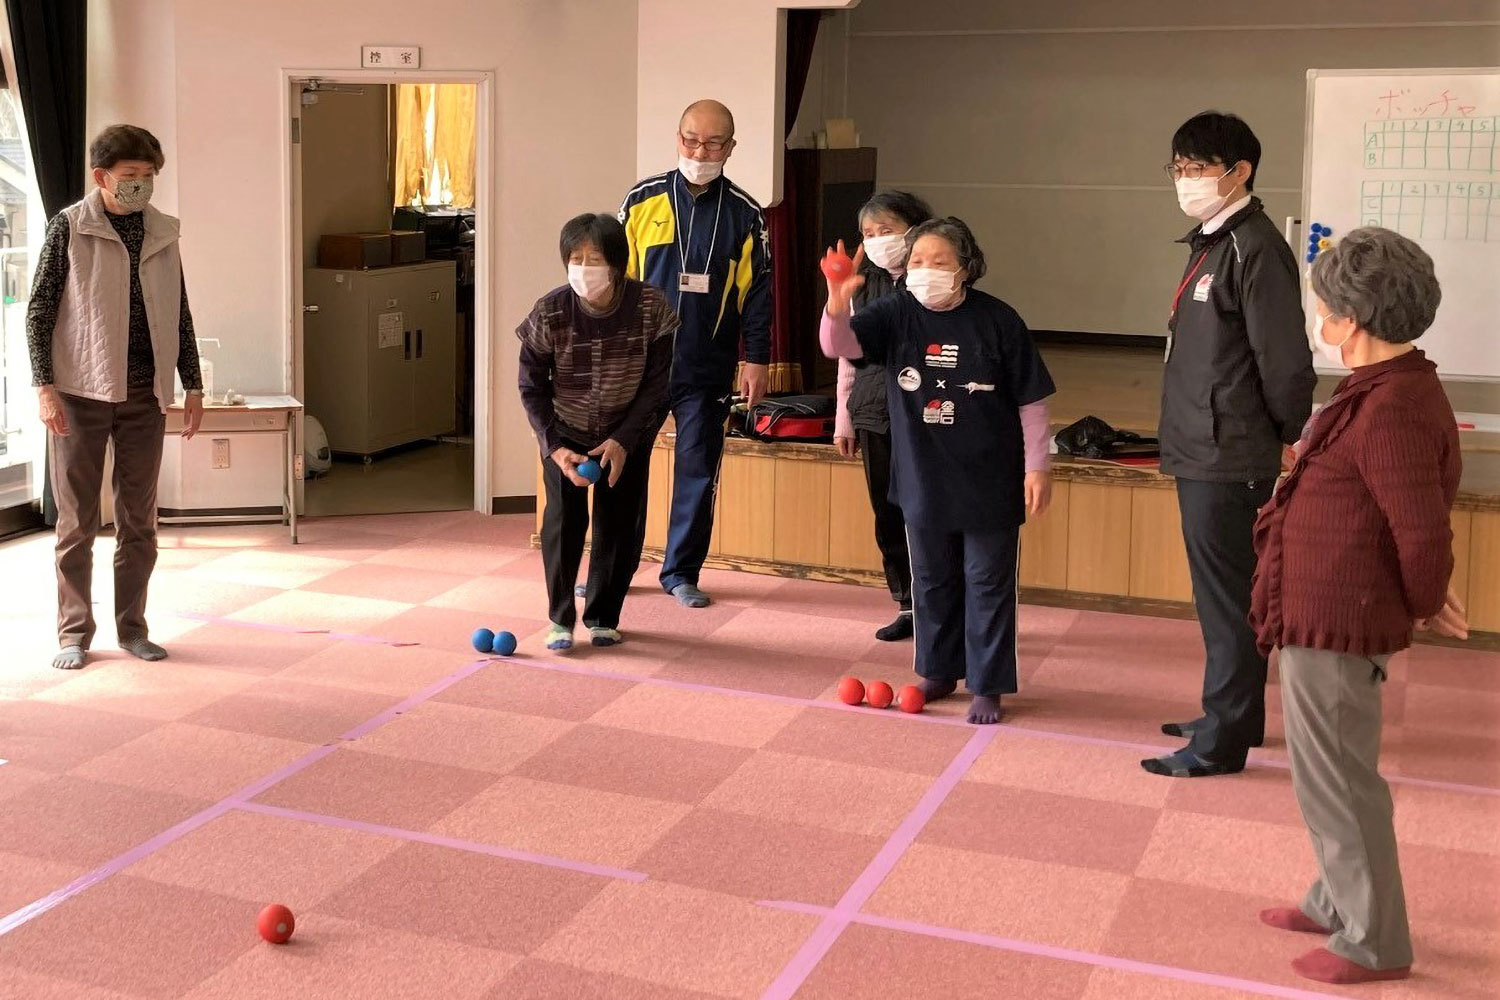 甲子公民館で行われた「ボッチャ」の体験会では高齢者の活動を見守った＝2021年3月、釜石市スポーツ推進課提供